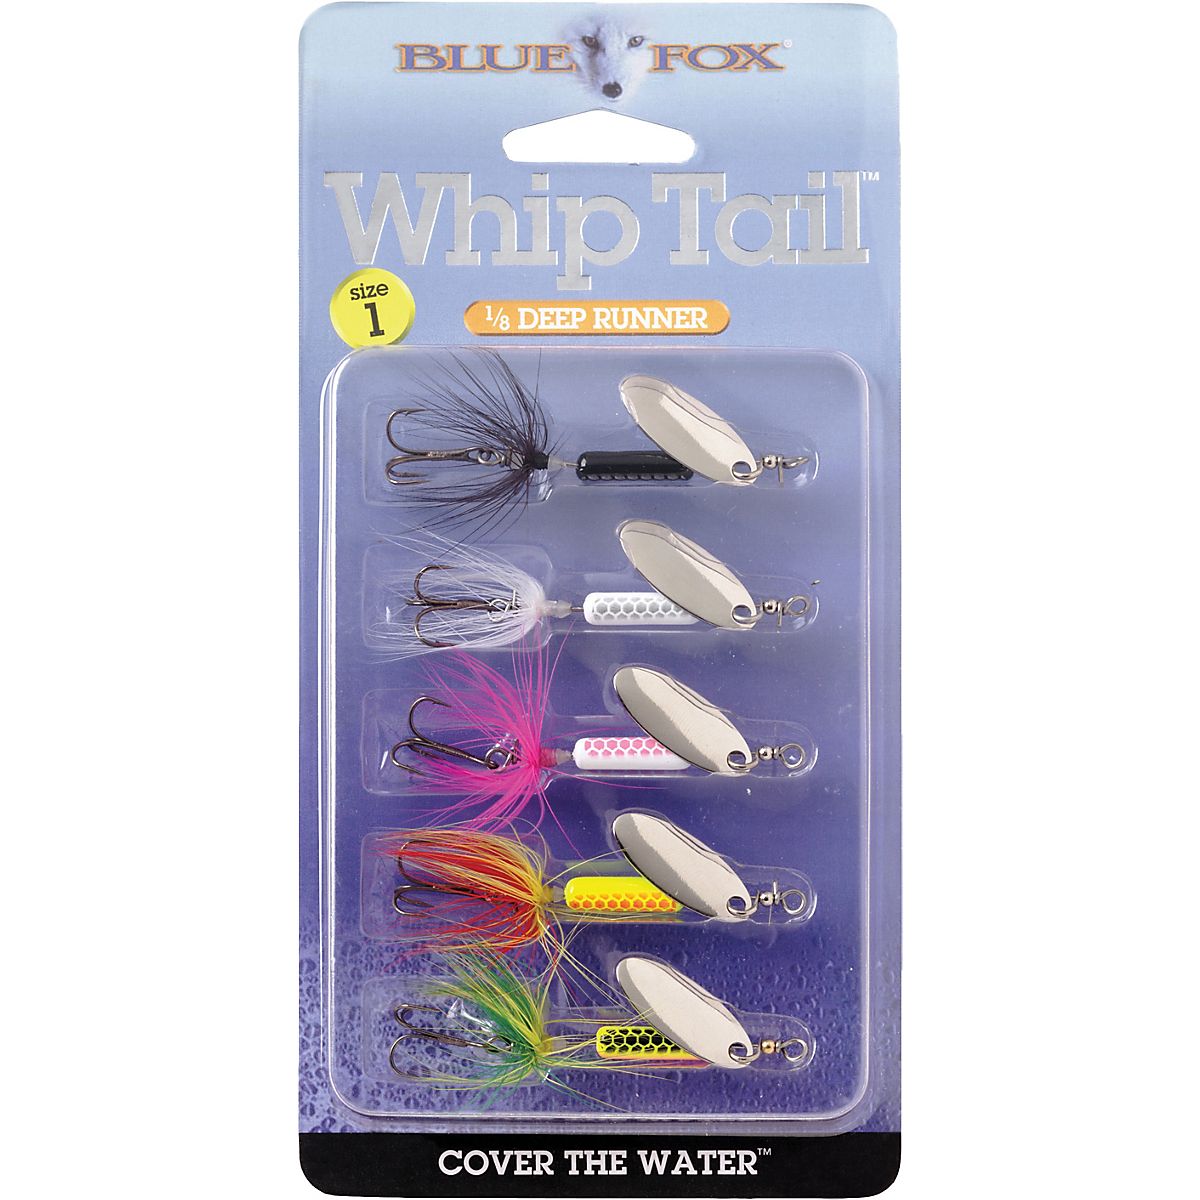 Blue Fox Whiptail Kit